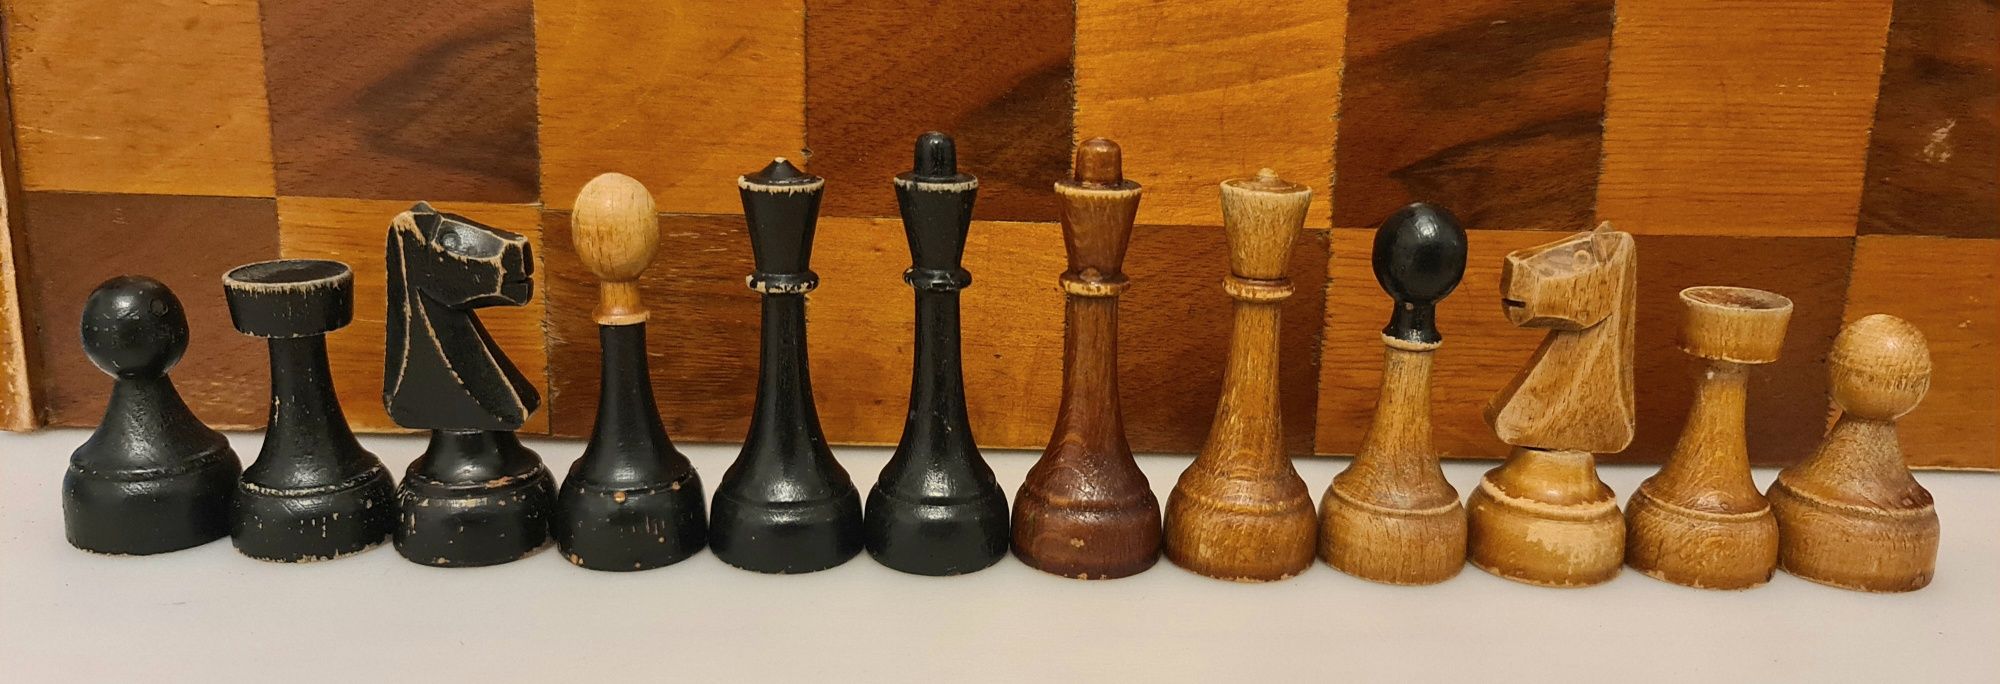 Set piese șah vechi din lemn